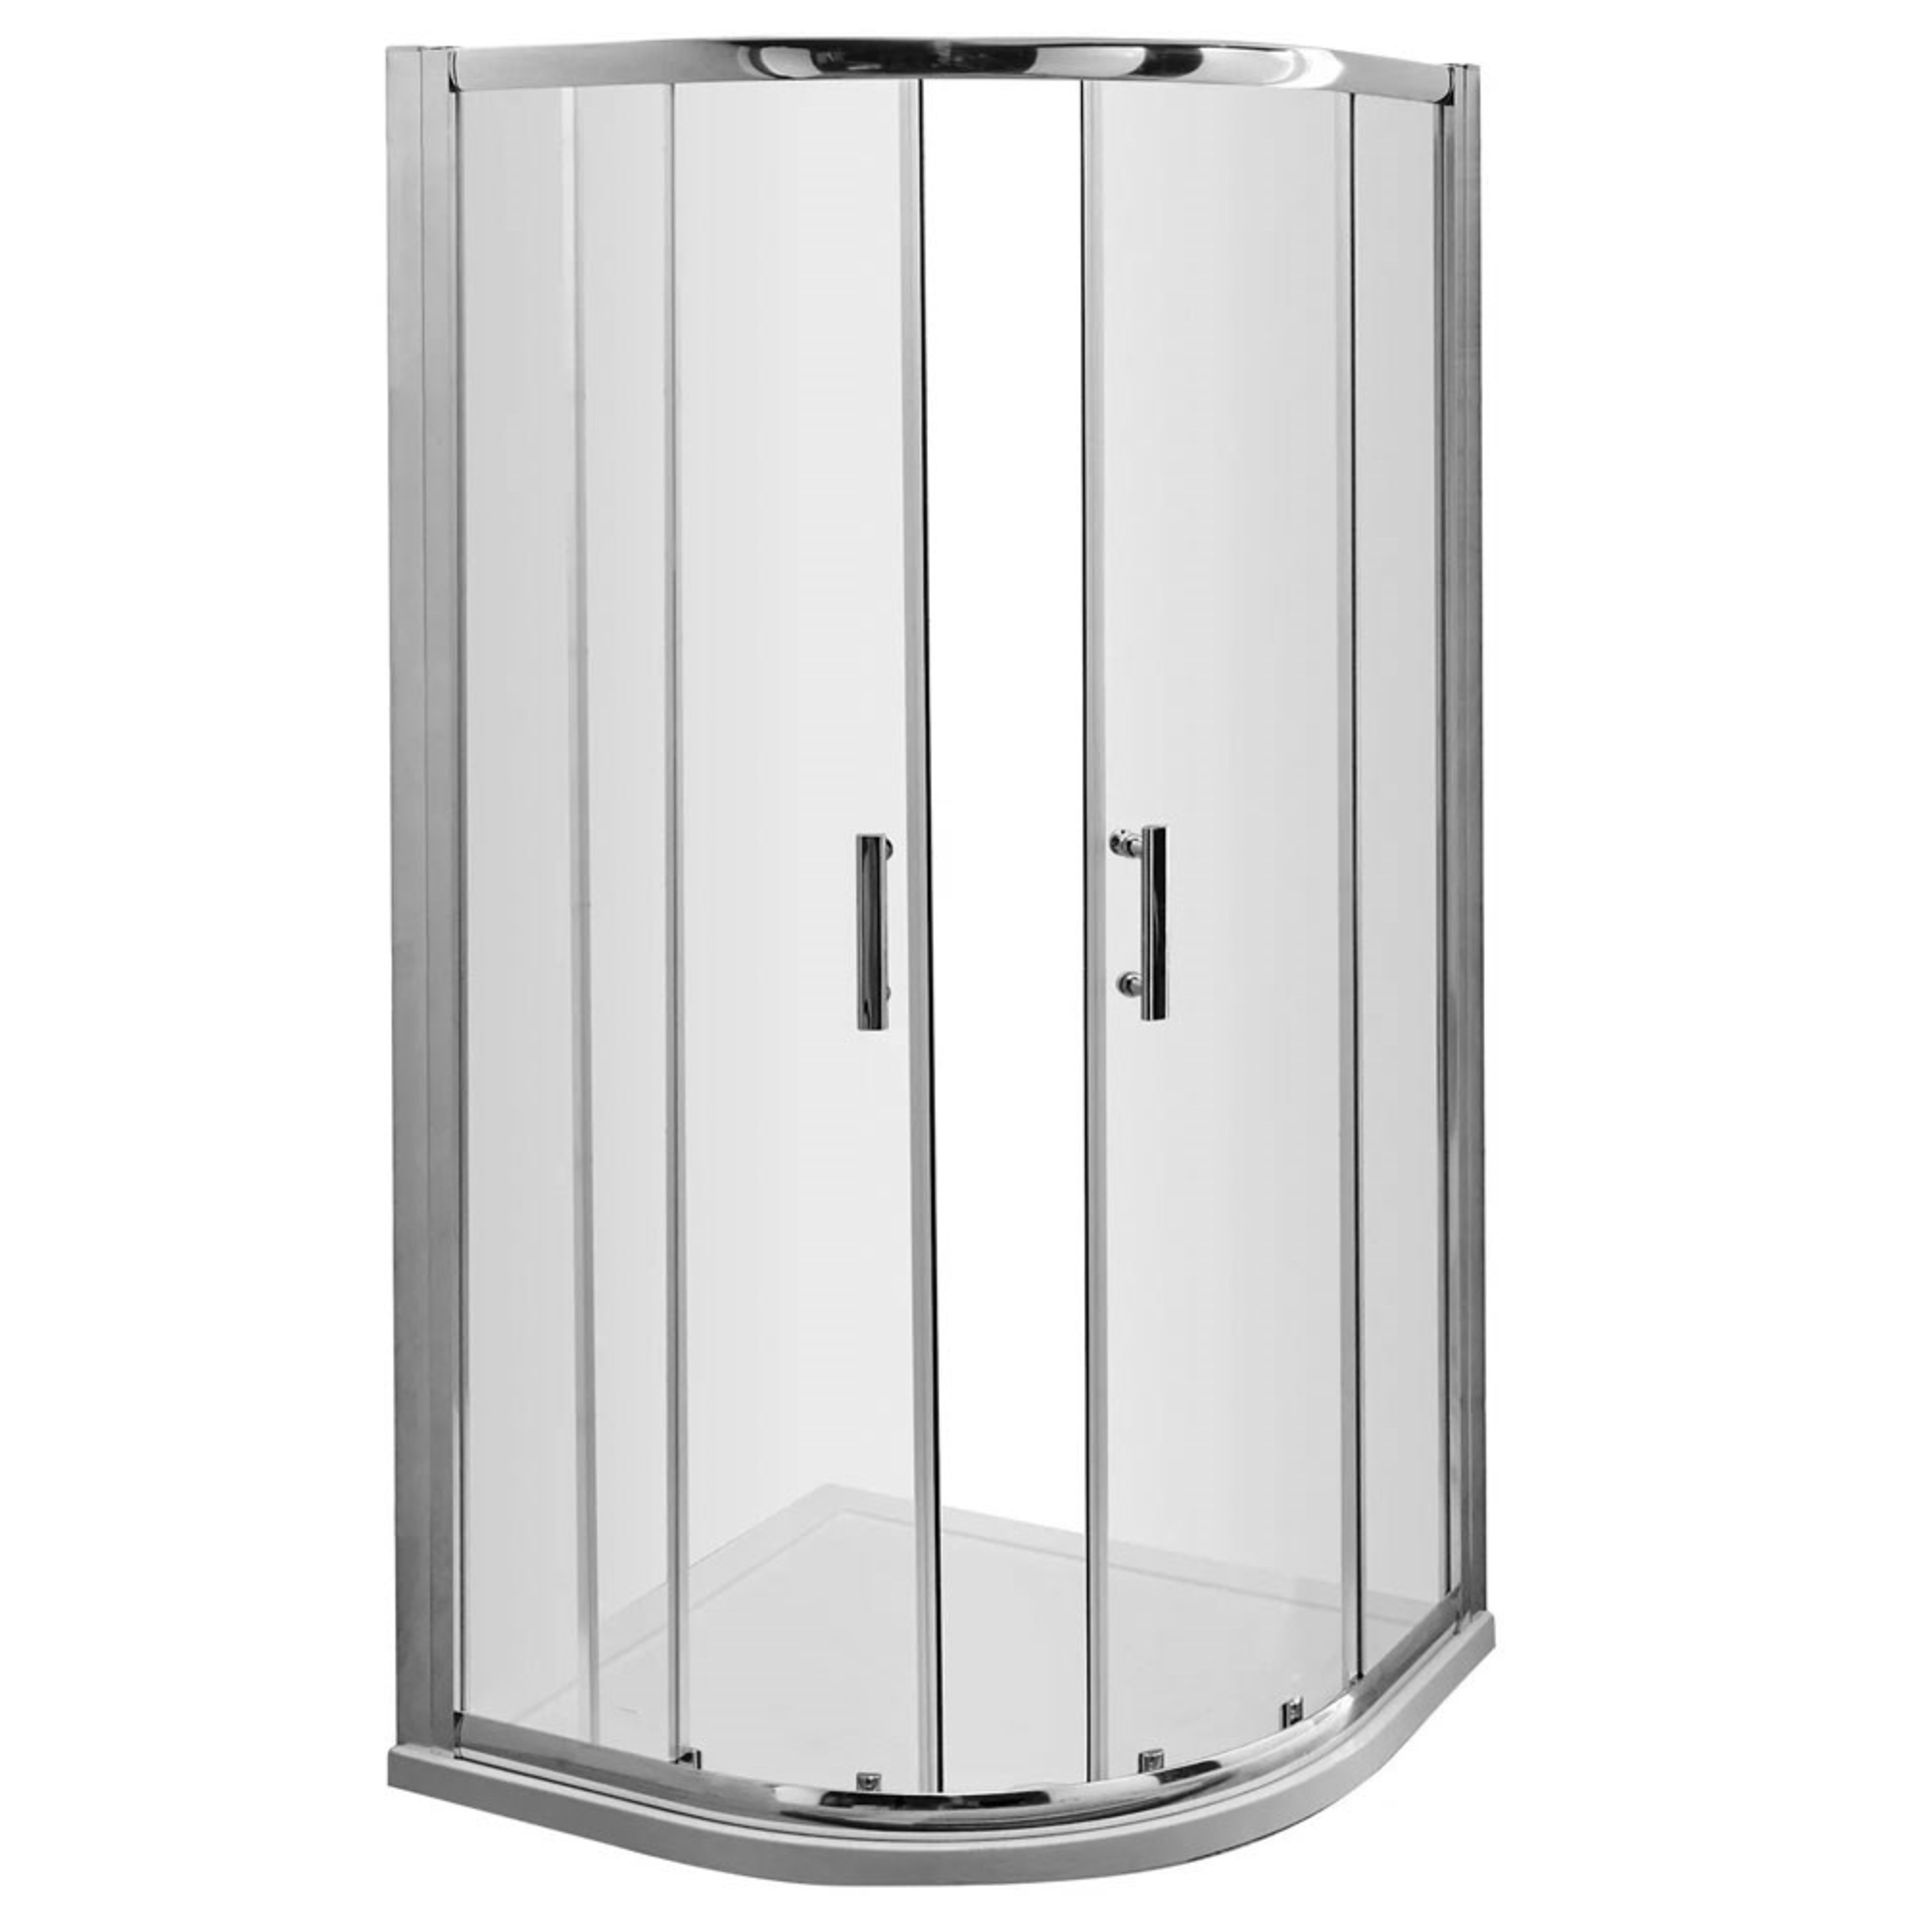 Twyfords 800x800mm - Premium EasyClean Sliding Door Quadrant Shower Enclosure.RRP £499.99 High... - Bild 2 aus 3